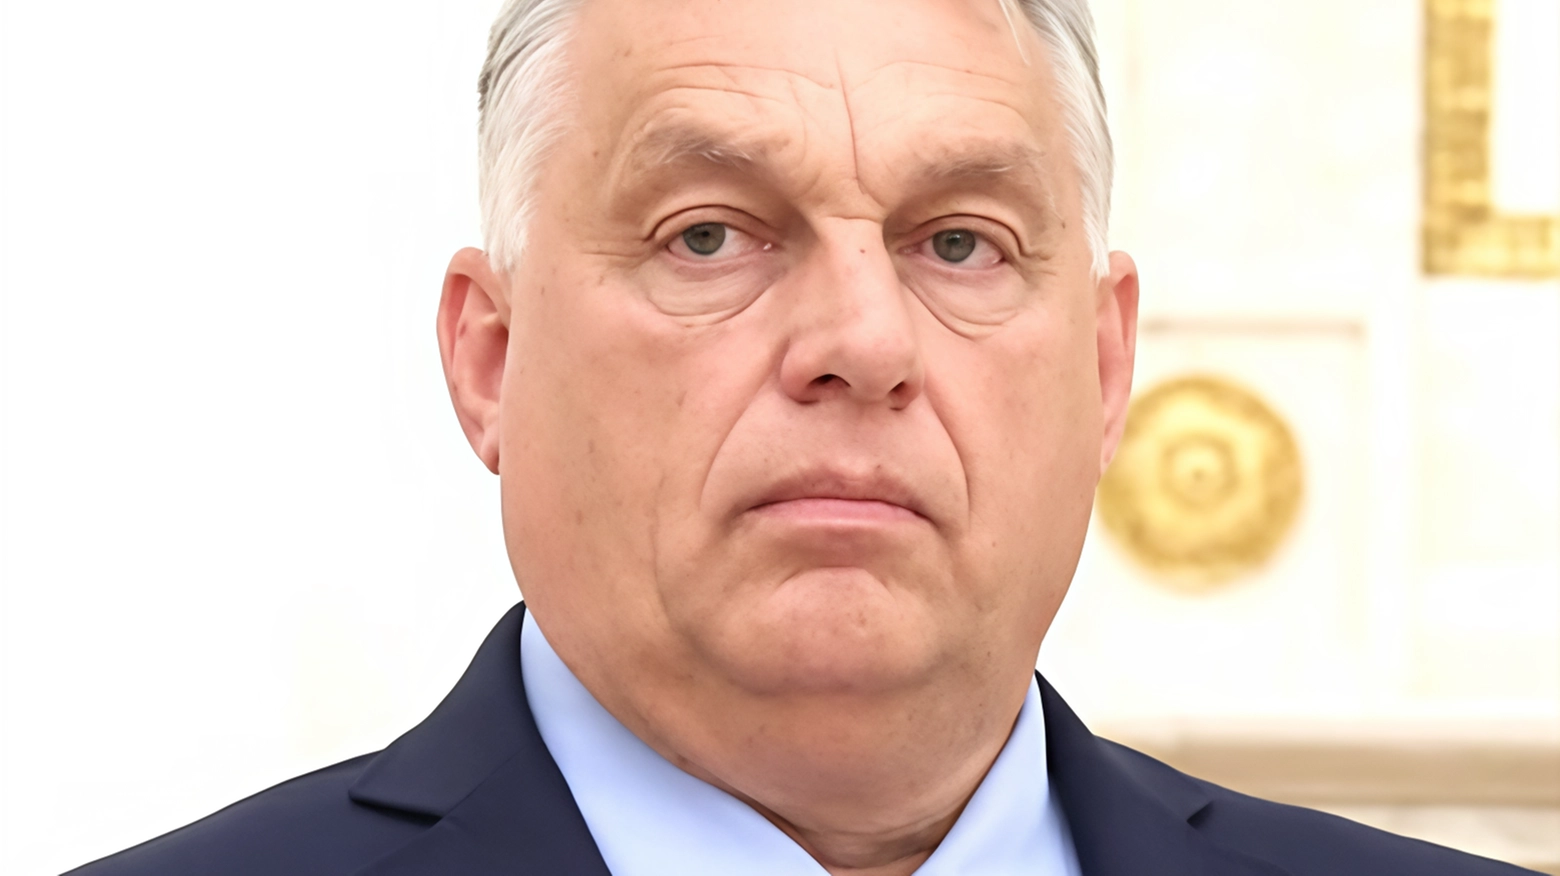 Orban rischia sanzioni dall'UE per presunta slealtà durante il vertice Nato a Washington. La Polonia guida l'offensiva per mettere in chiaro la situazione.